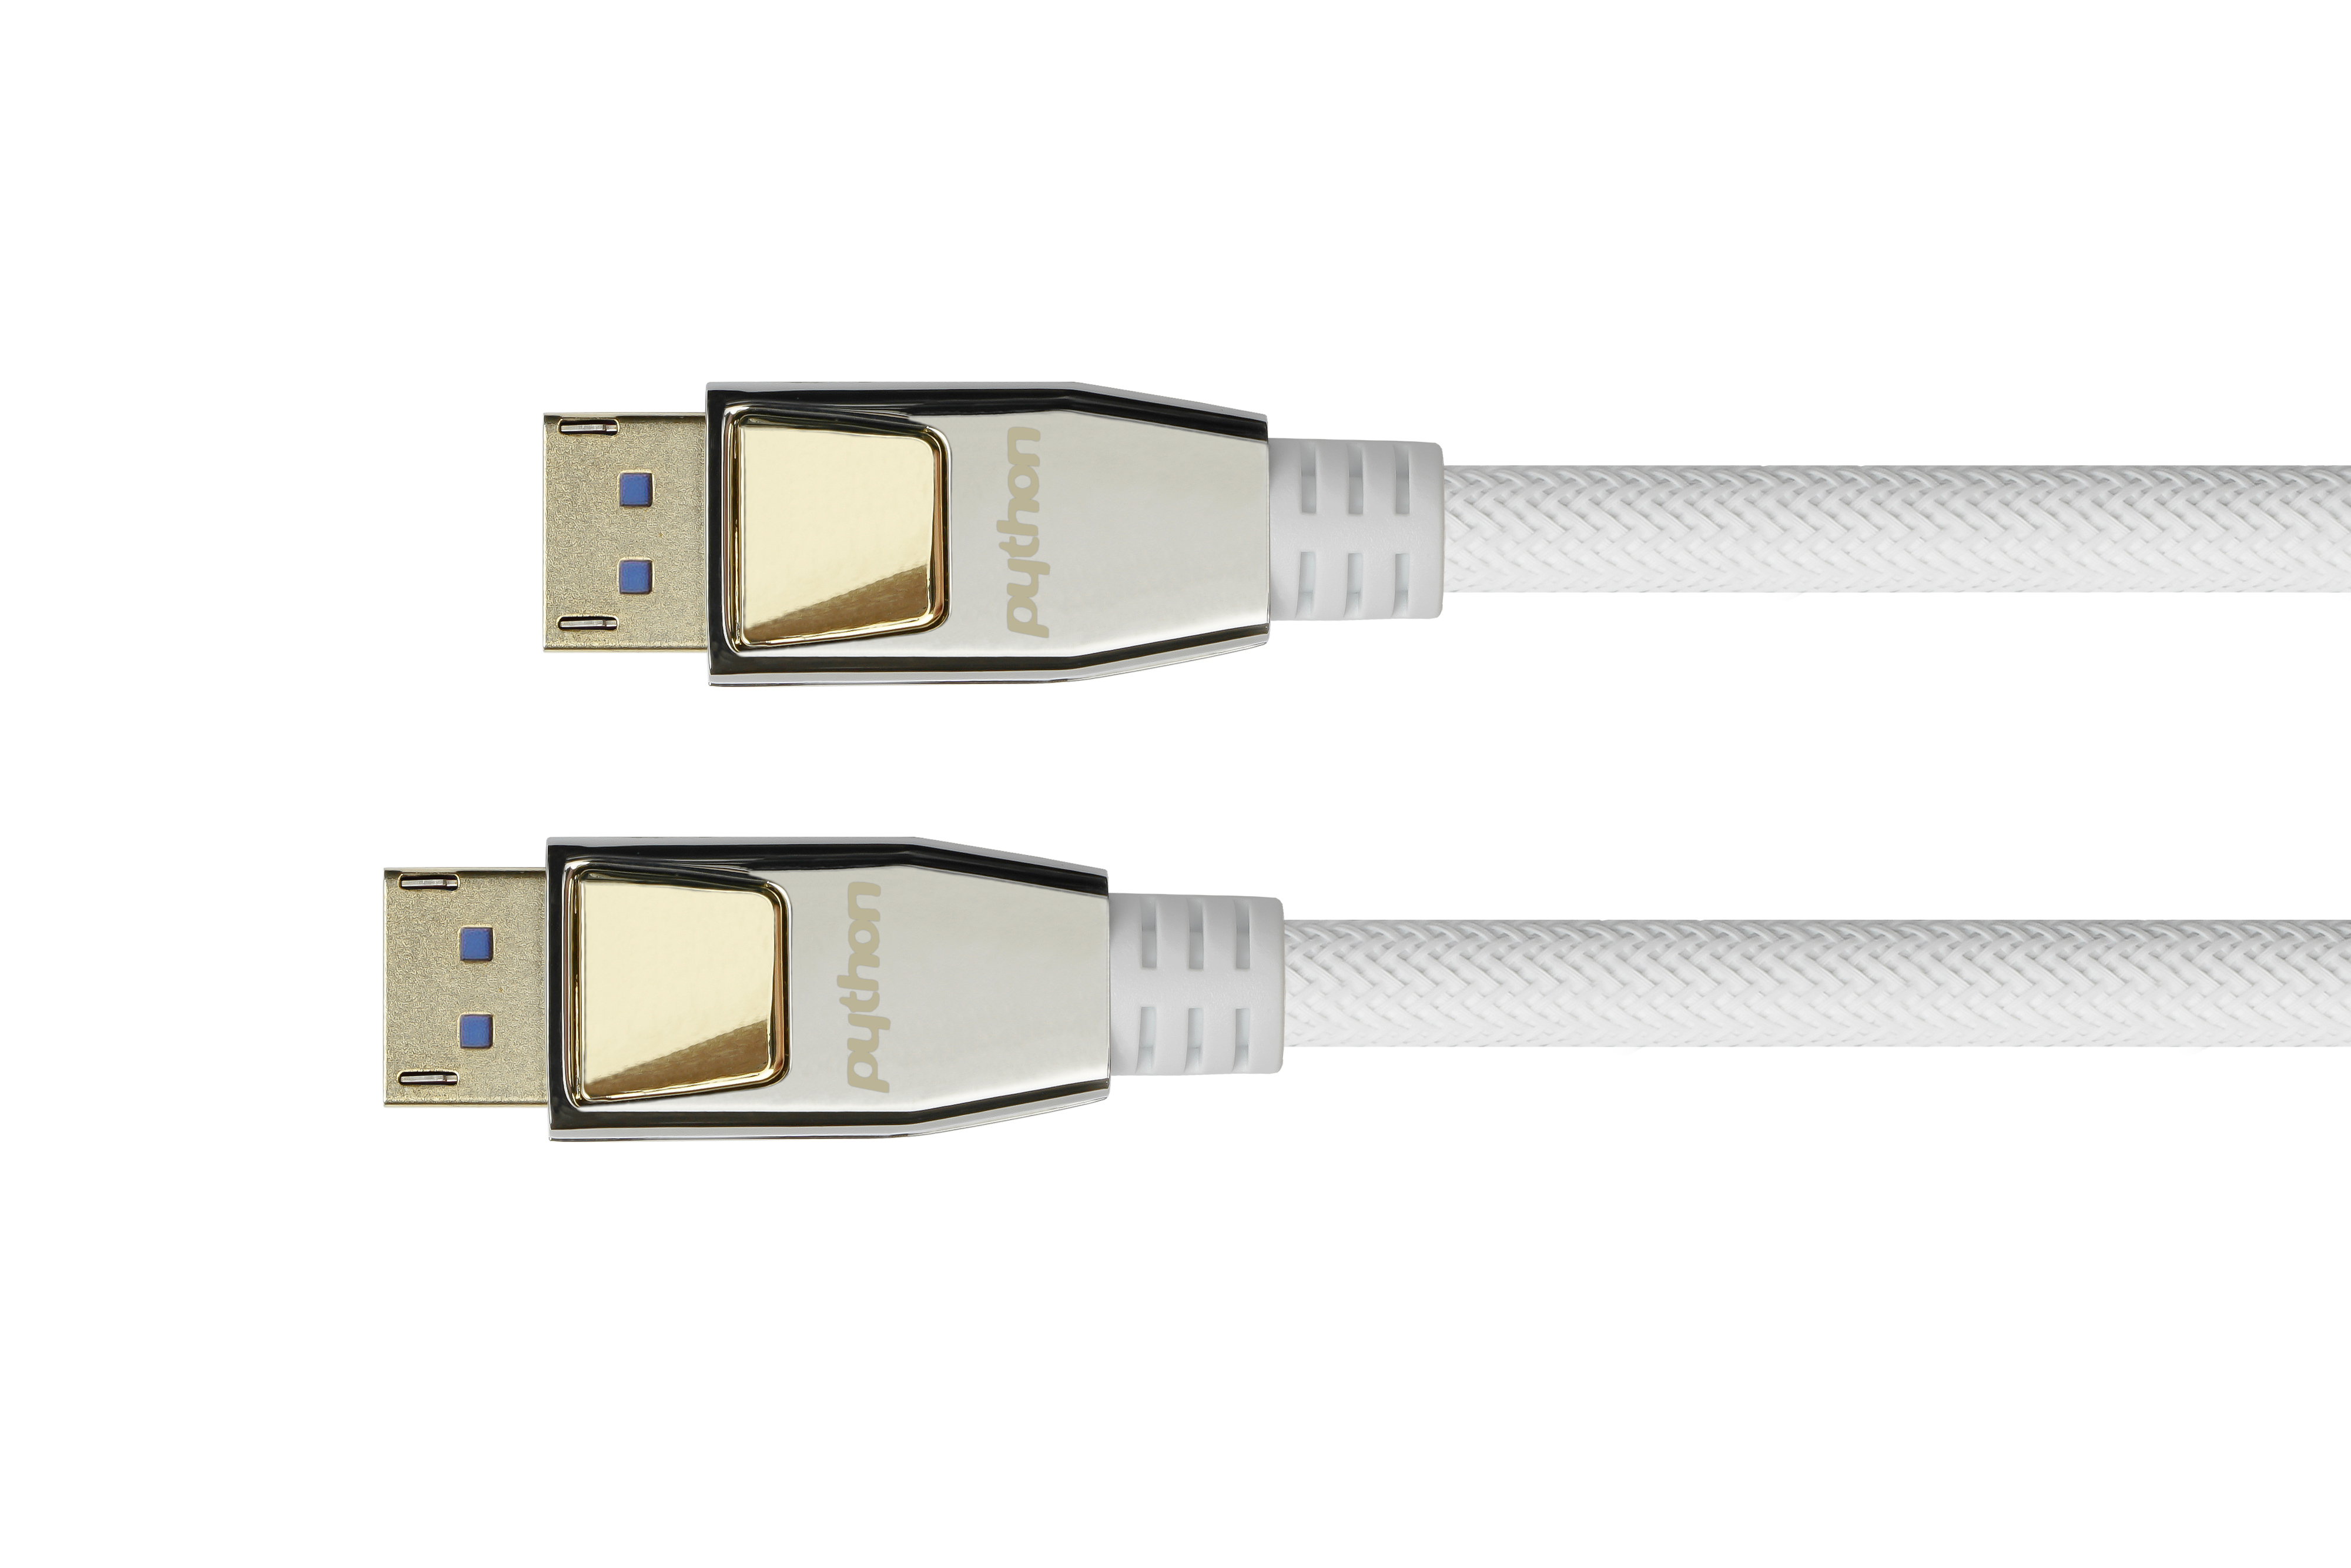 PYTHON Anschlusskabel 2.0, weiß, m 54 3 Displayport, CU, vergoldete Vollmetallstecker, Gbit/s, Kontakte, Nylongeflecht 3m